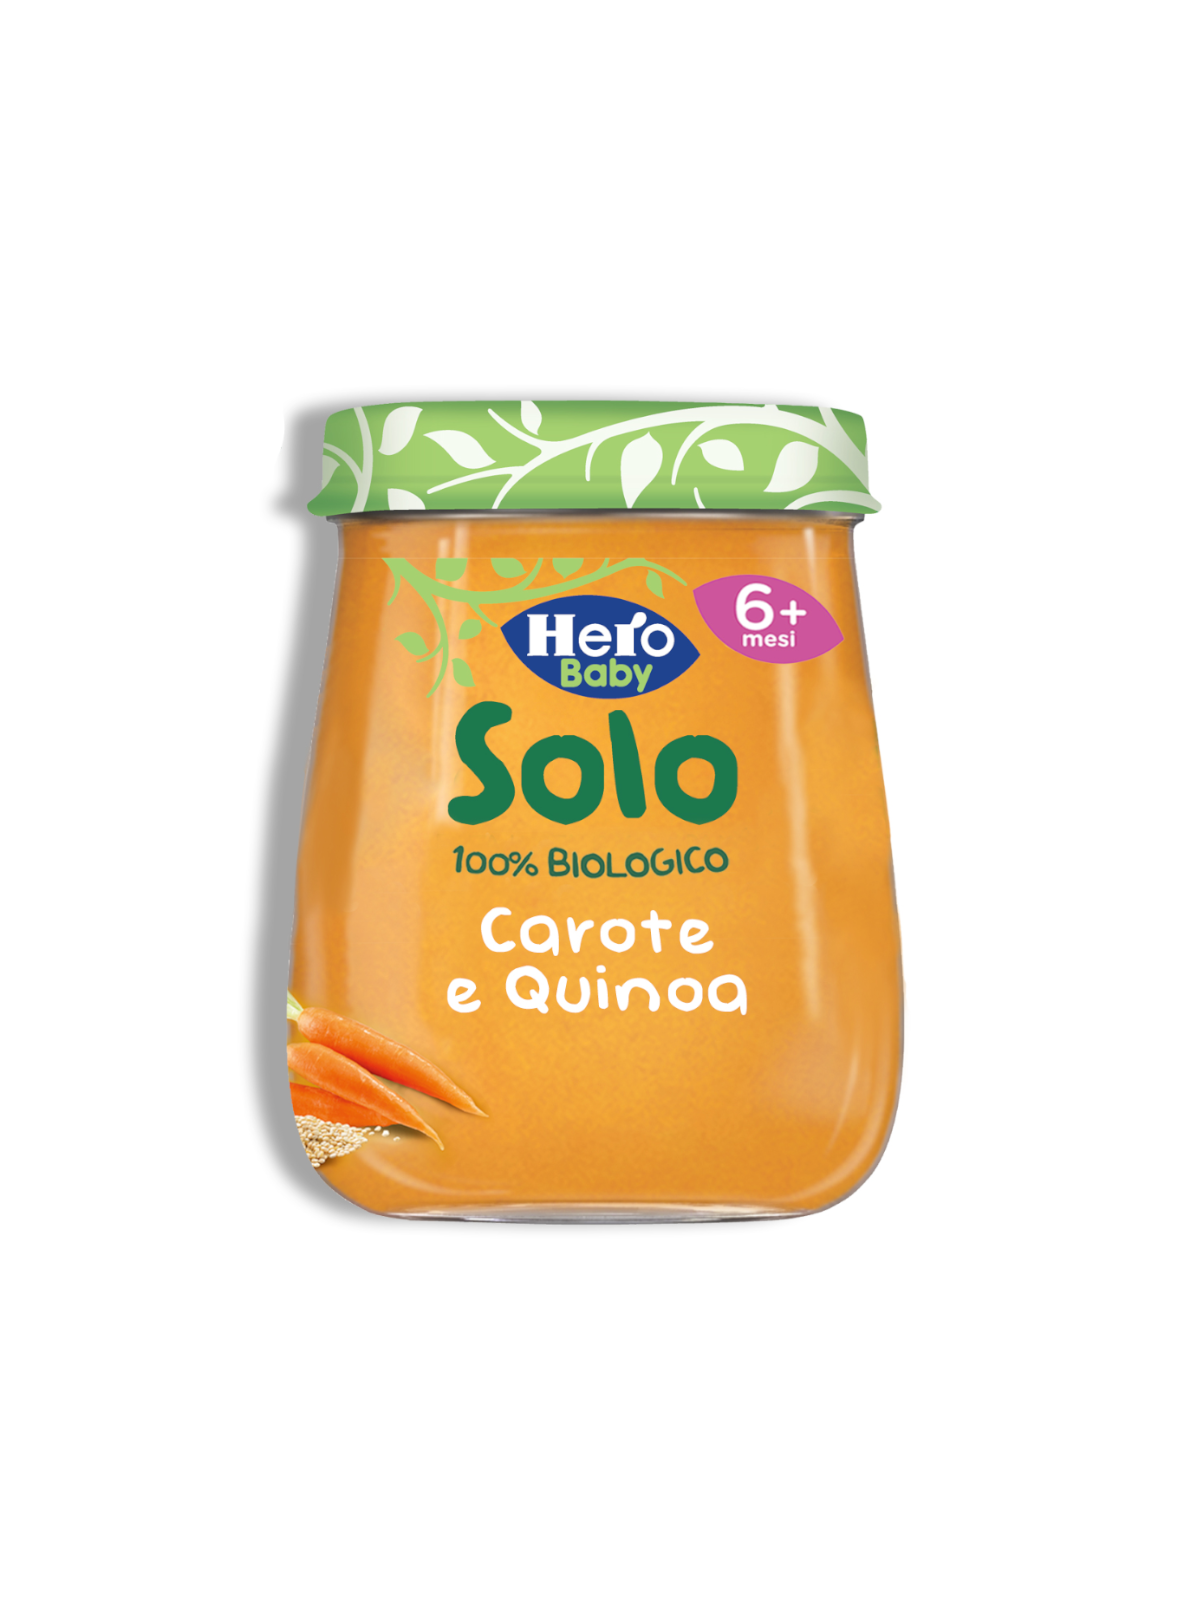 Omogeneizzato carota quinoa 120 gr - Hero Solo